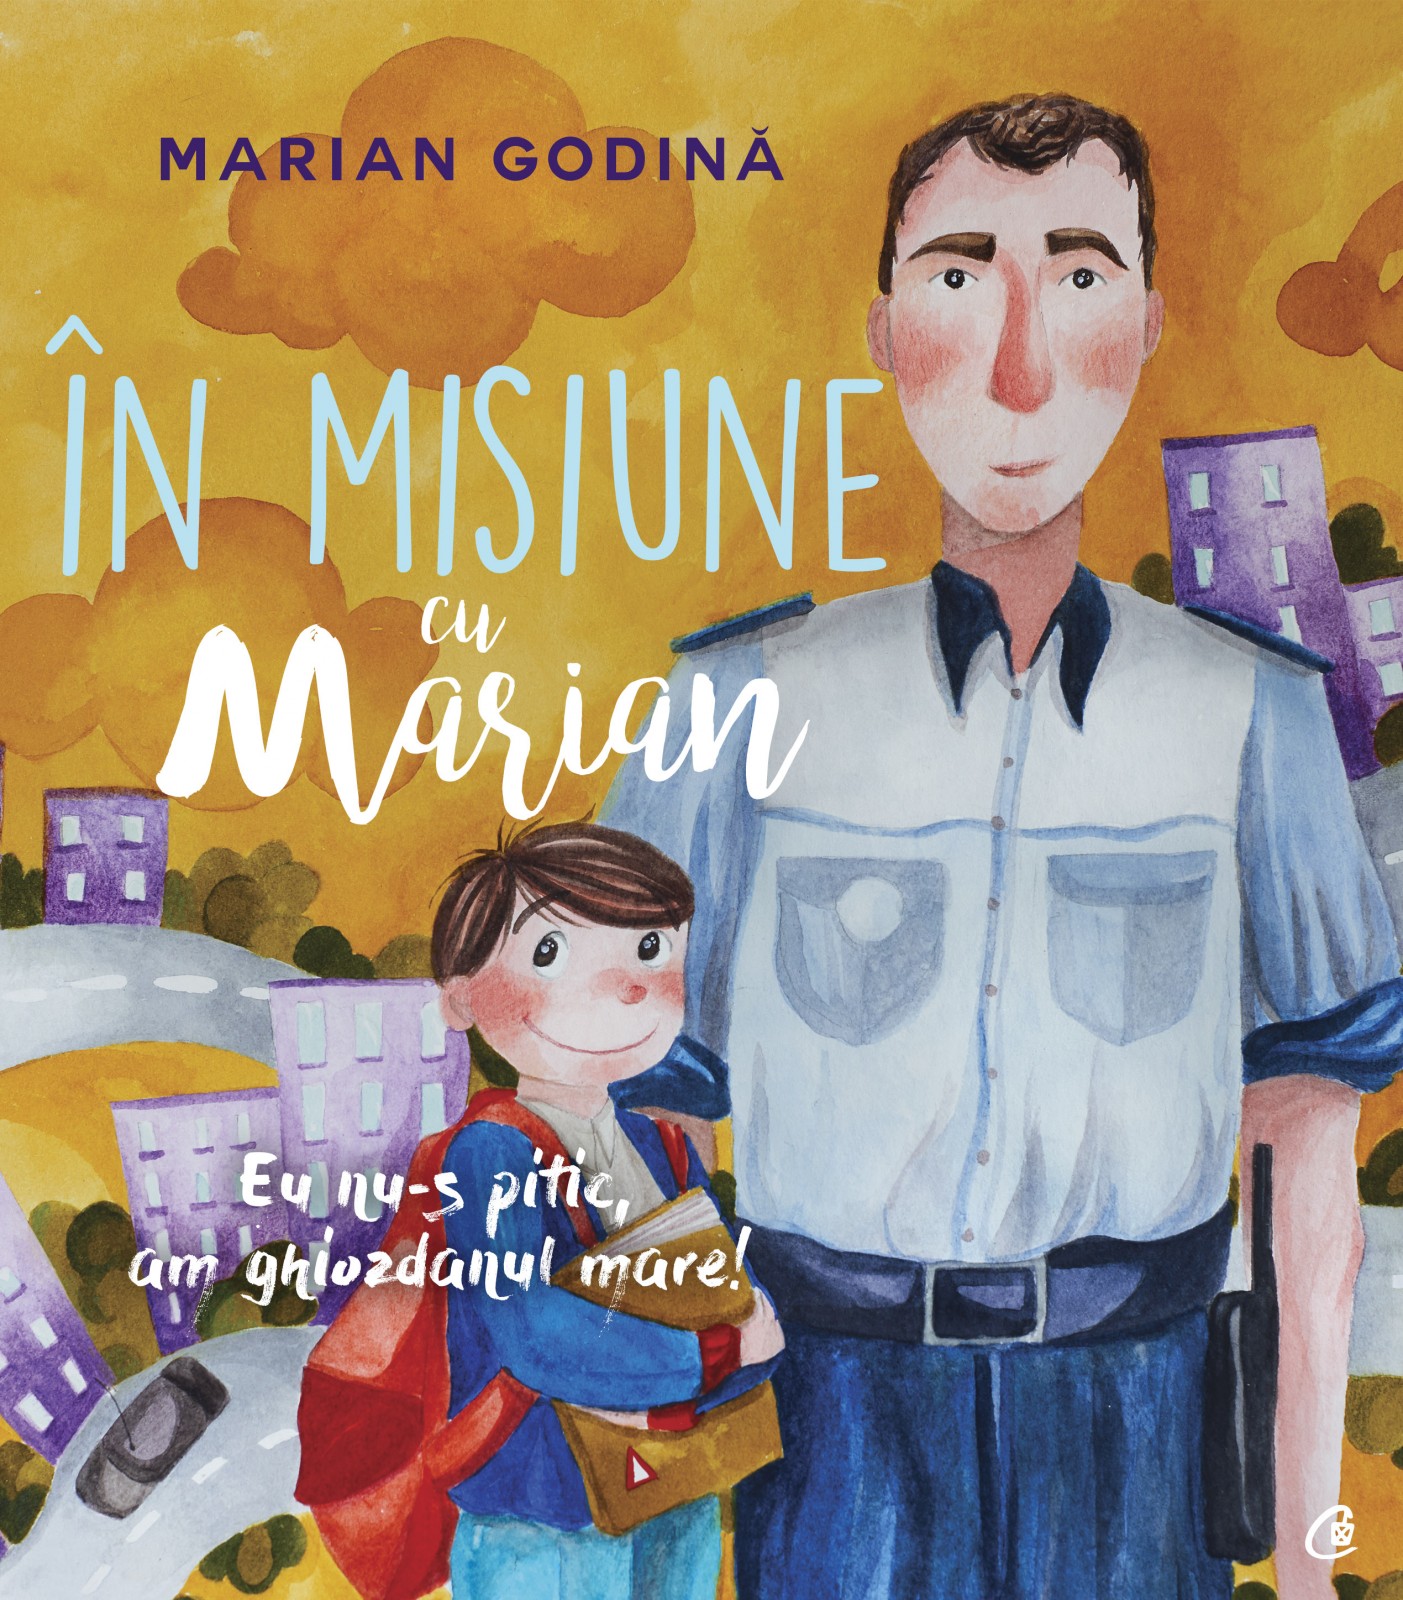 Întâlnire la Bistrița cu Marian Godină și volumul “În misiune cu Marian. Eu nu-s pitic, am ghiozdanul mare!”